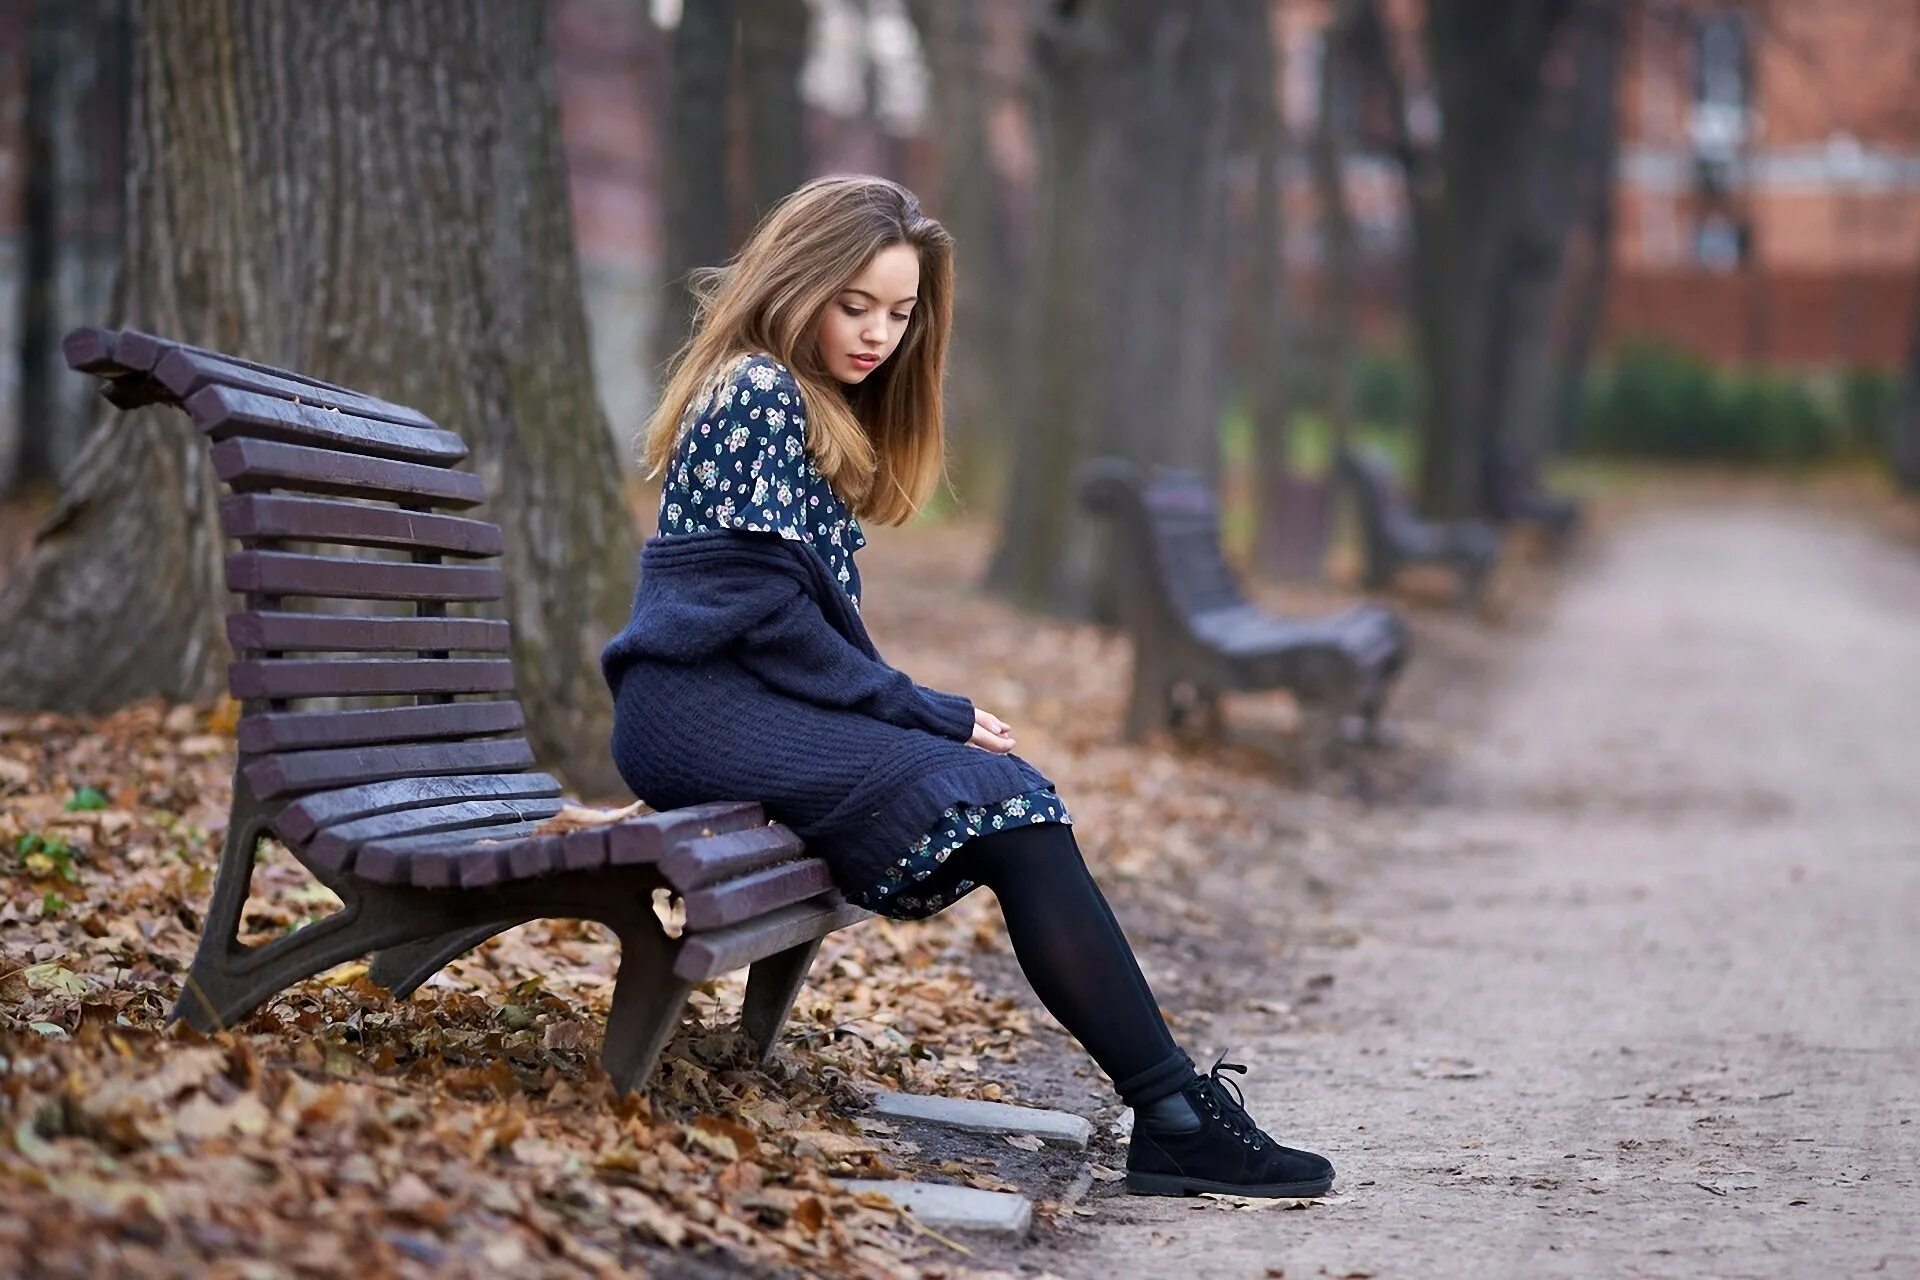 Девушка в парке. Осенняя фотосессия в парке. Женщина на скамейке в парке. Фотосессия в парке осенью. Sit on a bench